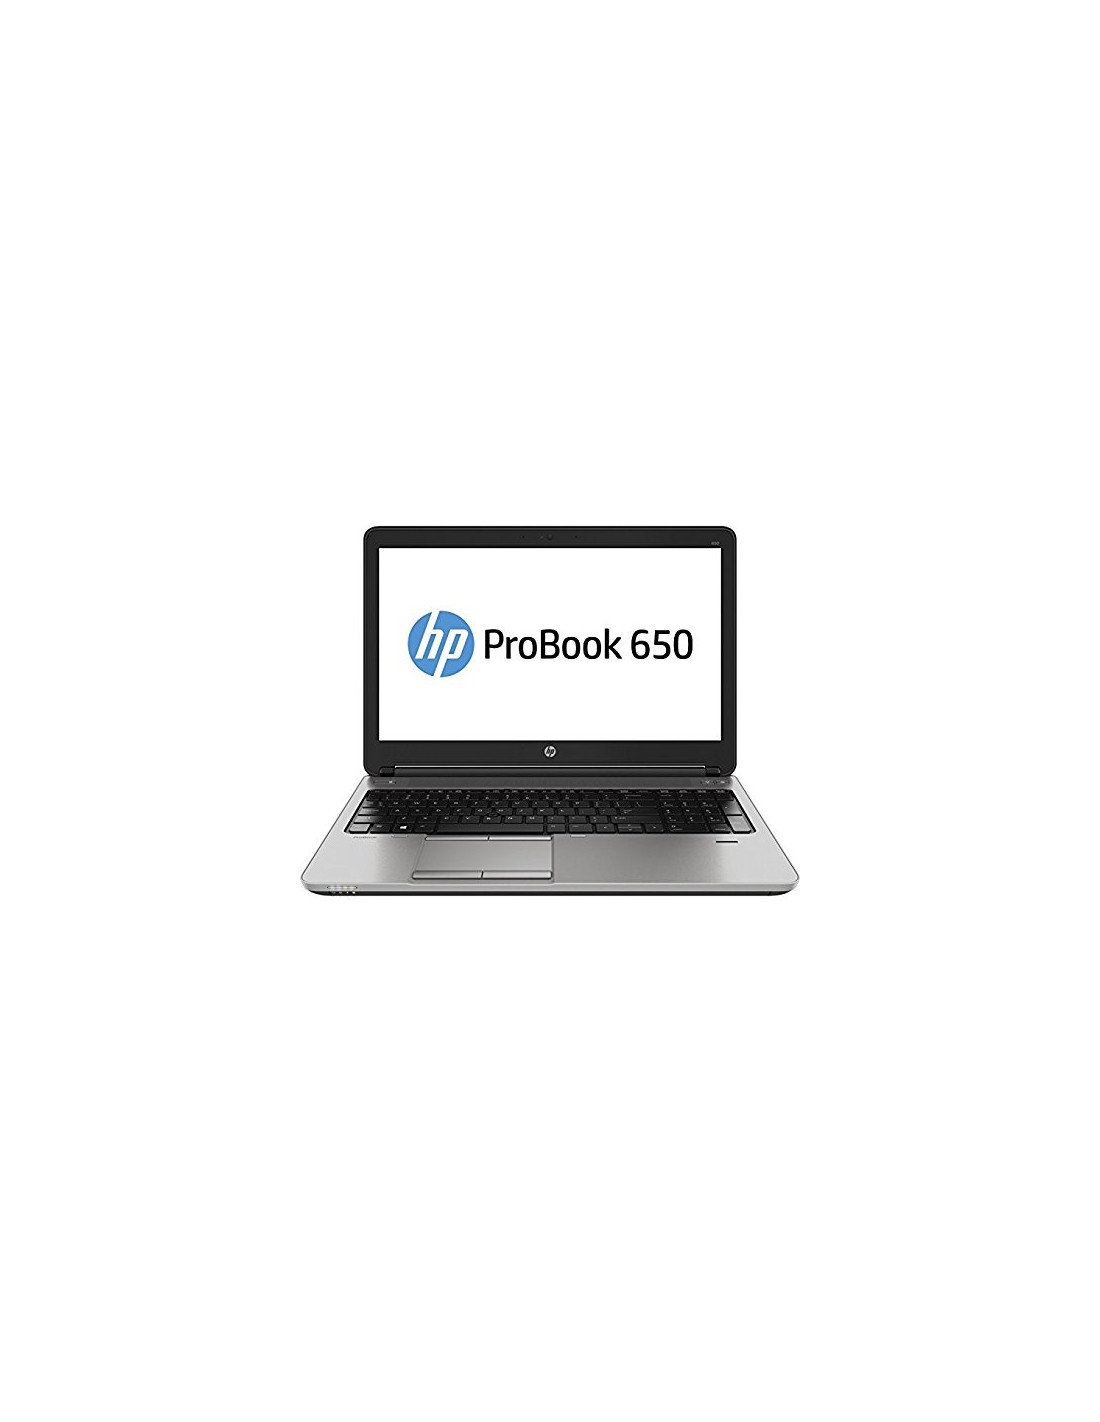 Probook 650 g1